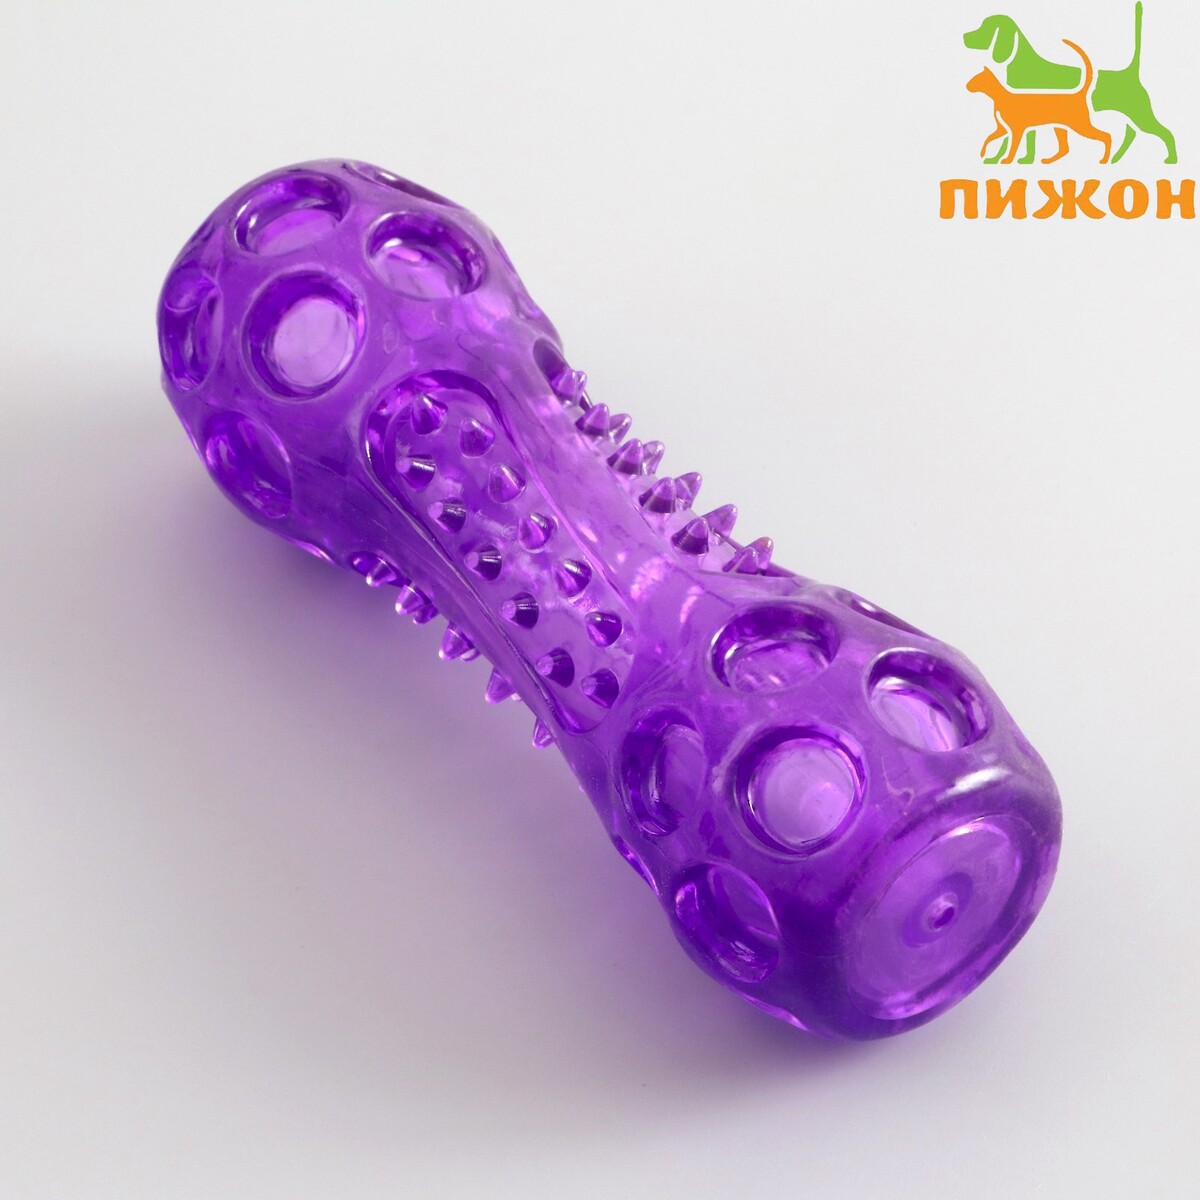 Игрушка-палка из термопластичной резины с утопленной пищалкой, фиолетовая гимнастическая палка skyfit sf gs